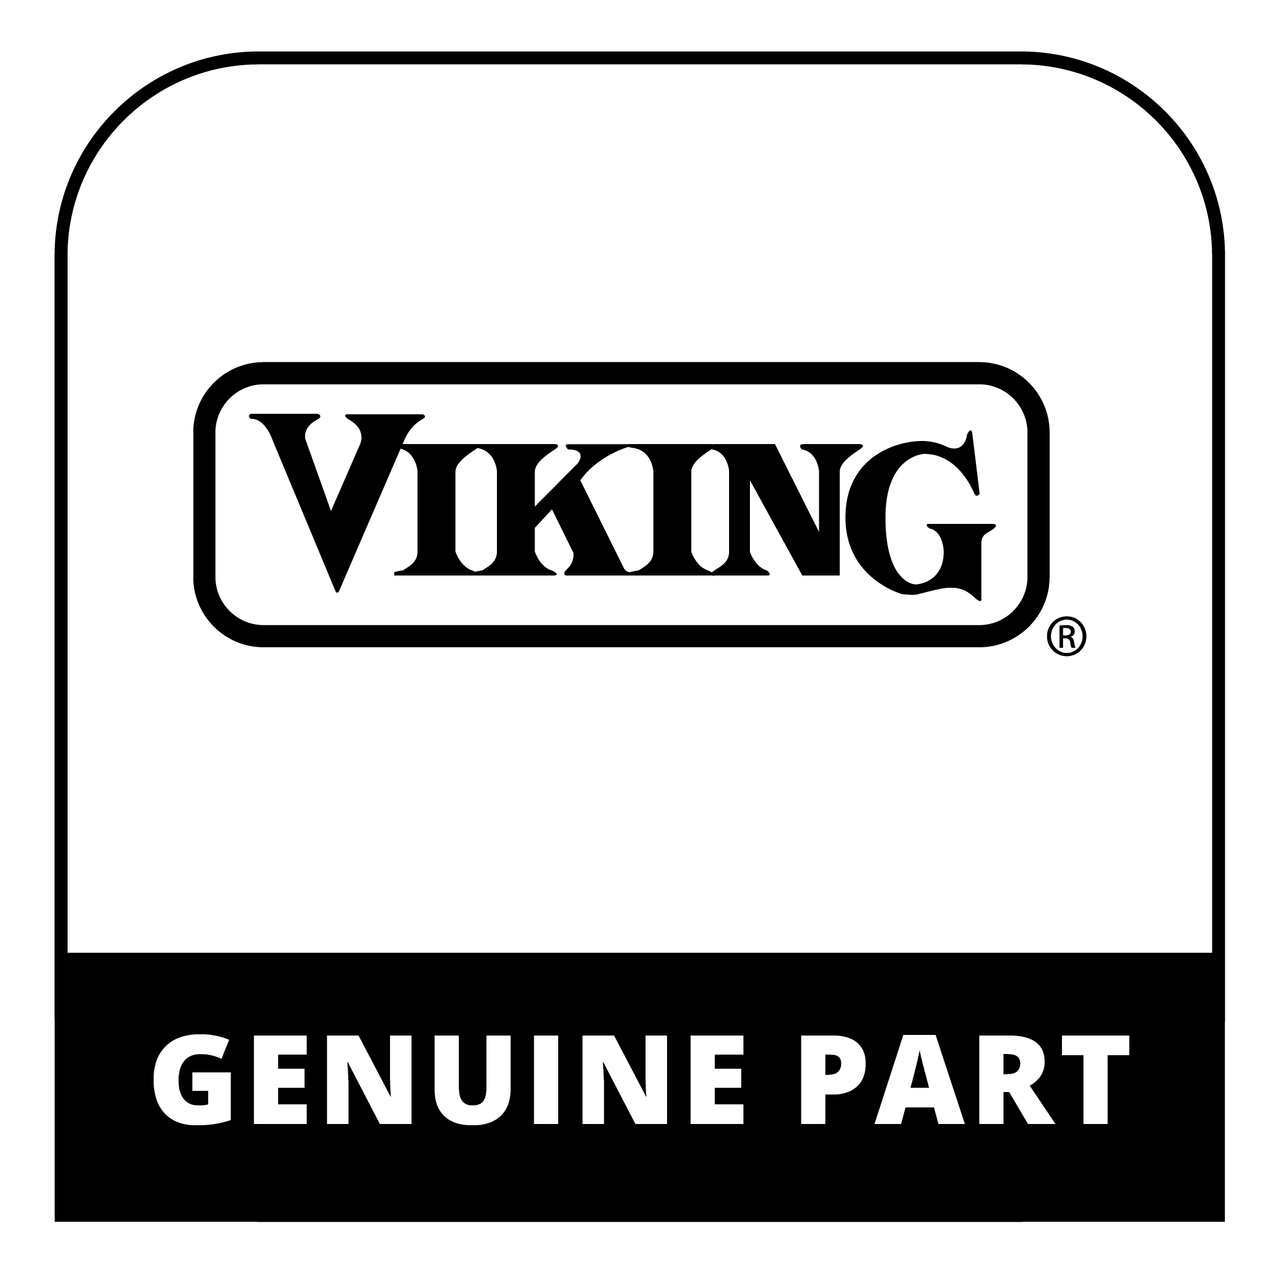 Viking 062072-000 - BOTTOM, HINGE, LH, ASM, BM 7 SERIES - Genuine Viking Part